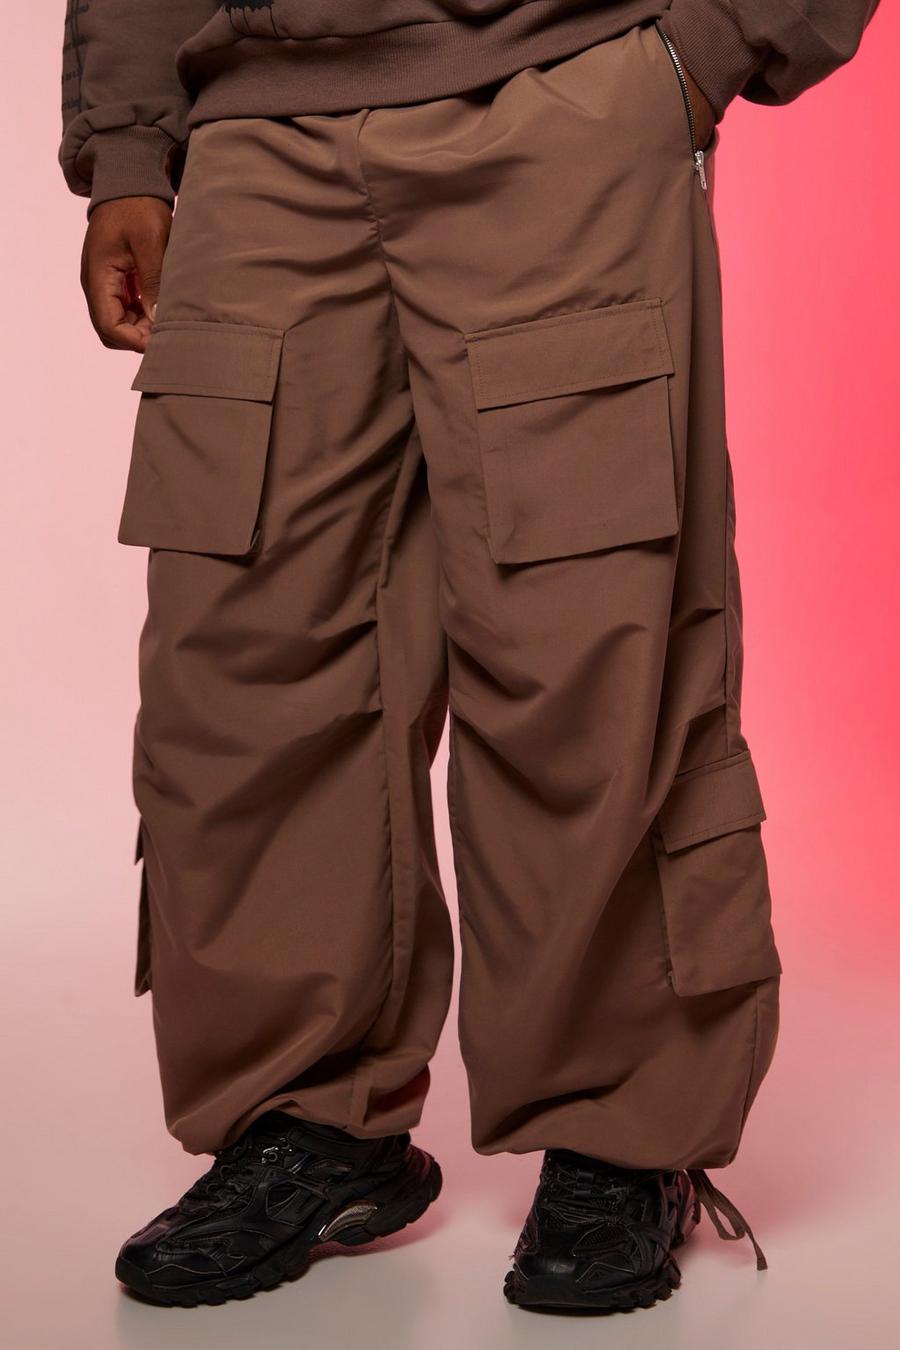 קפה marrón מכנסי קרגו עם כיסים מרובים והדפס Ofcl, מידות גדולות